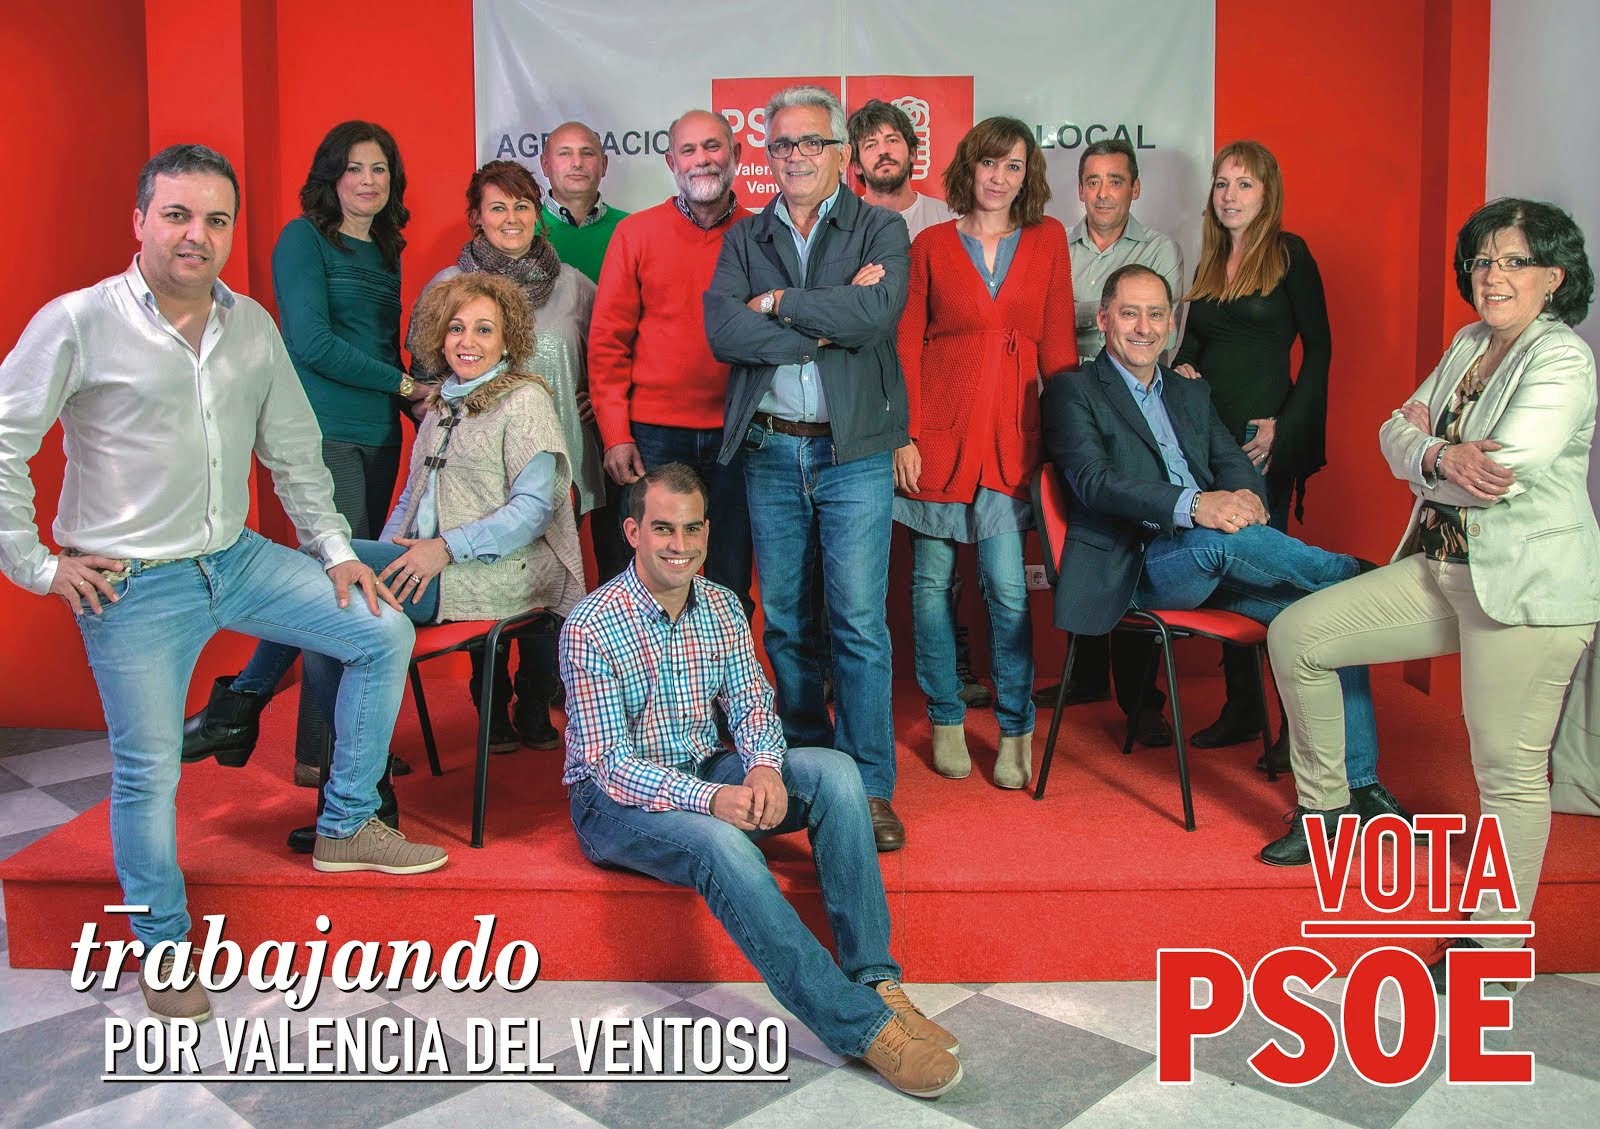 PSOE Valencia del Ventoso: Feliz Navidad y próspero año nuevo 2011